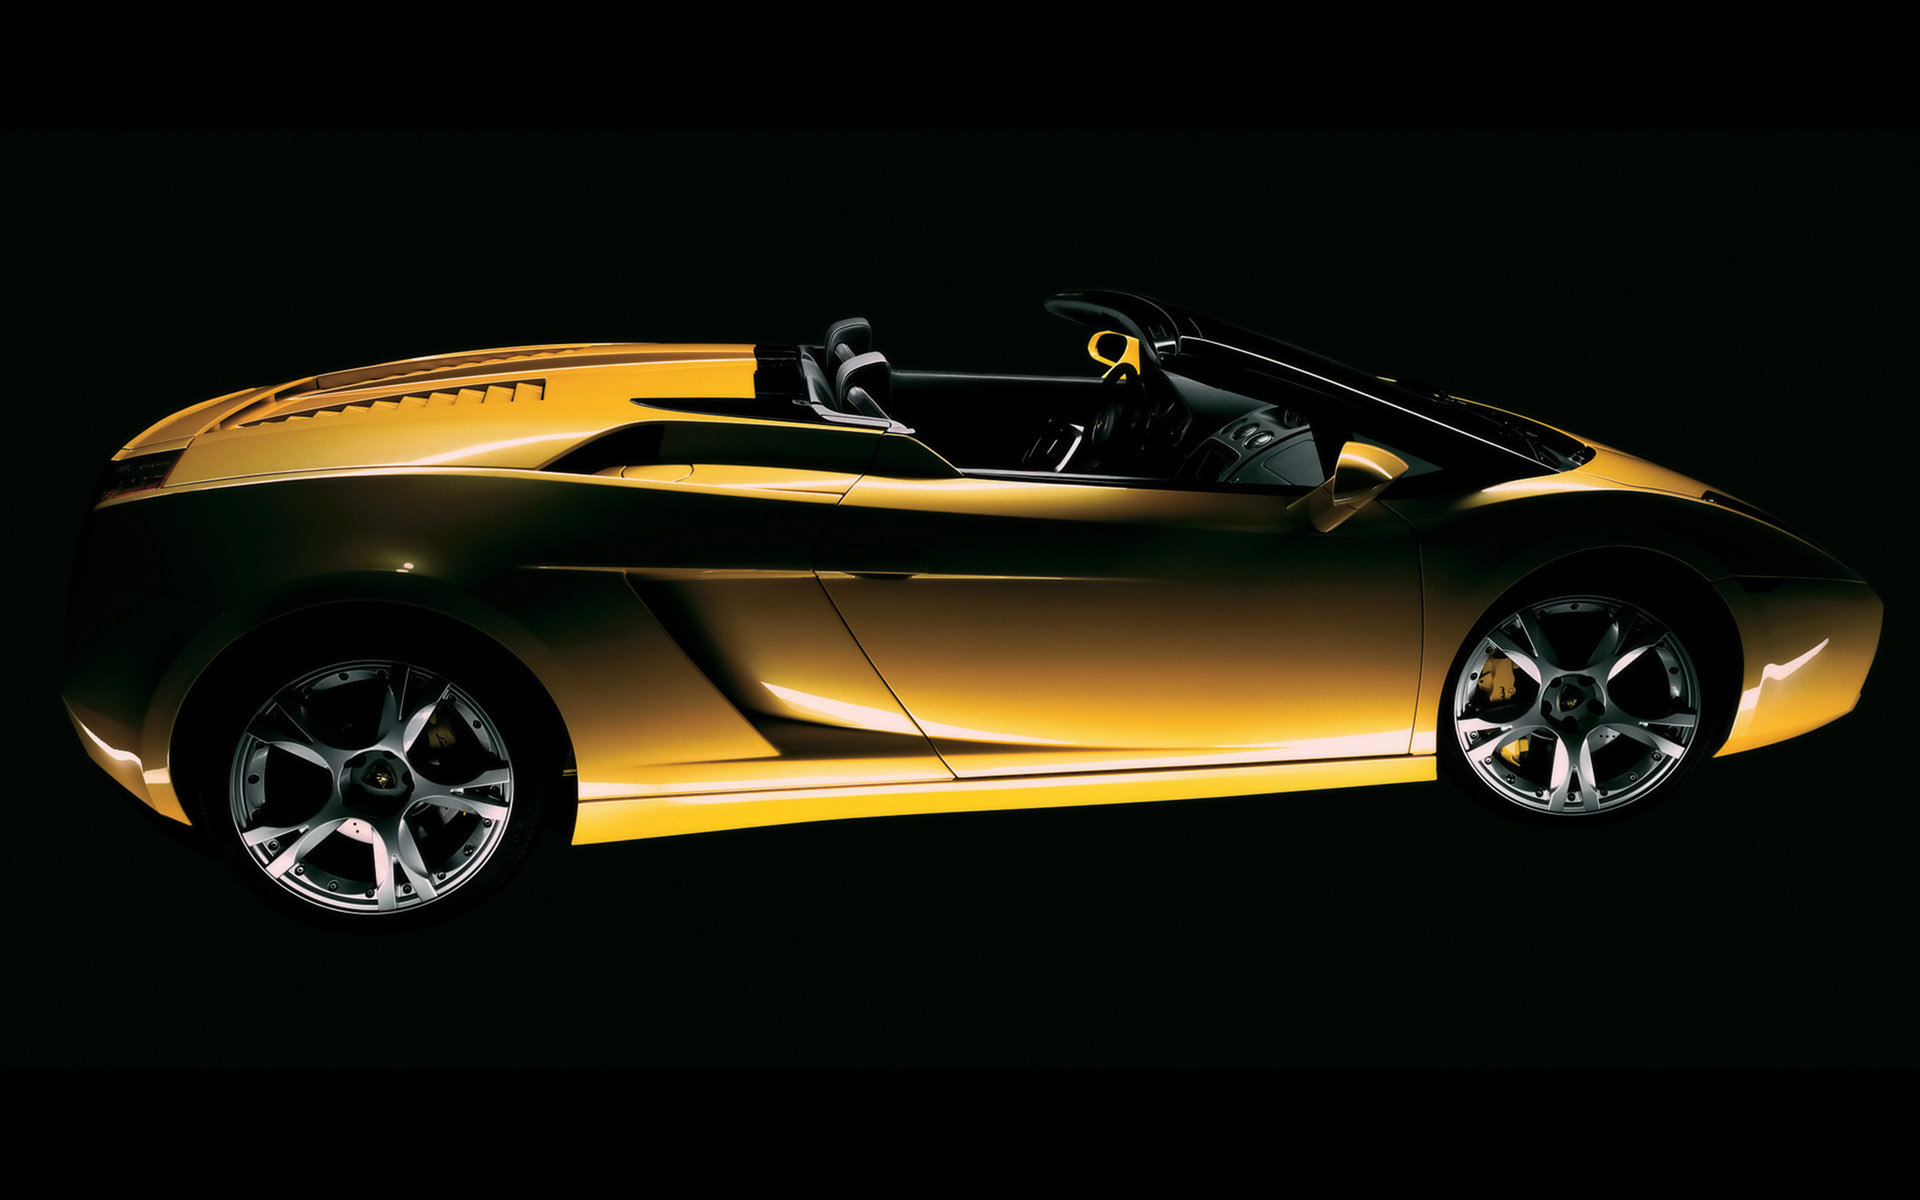 cars, vehicles, Lamborghini Gallardo, side view, yellow cars, italian cars - desktop wallpaper